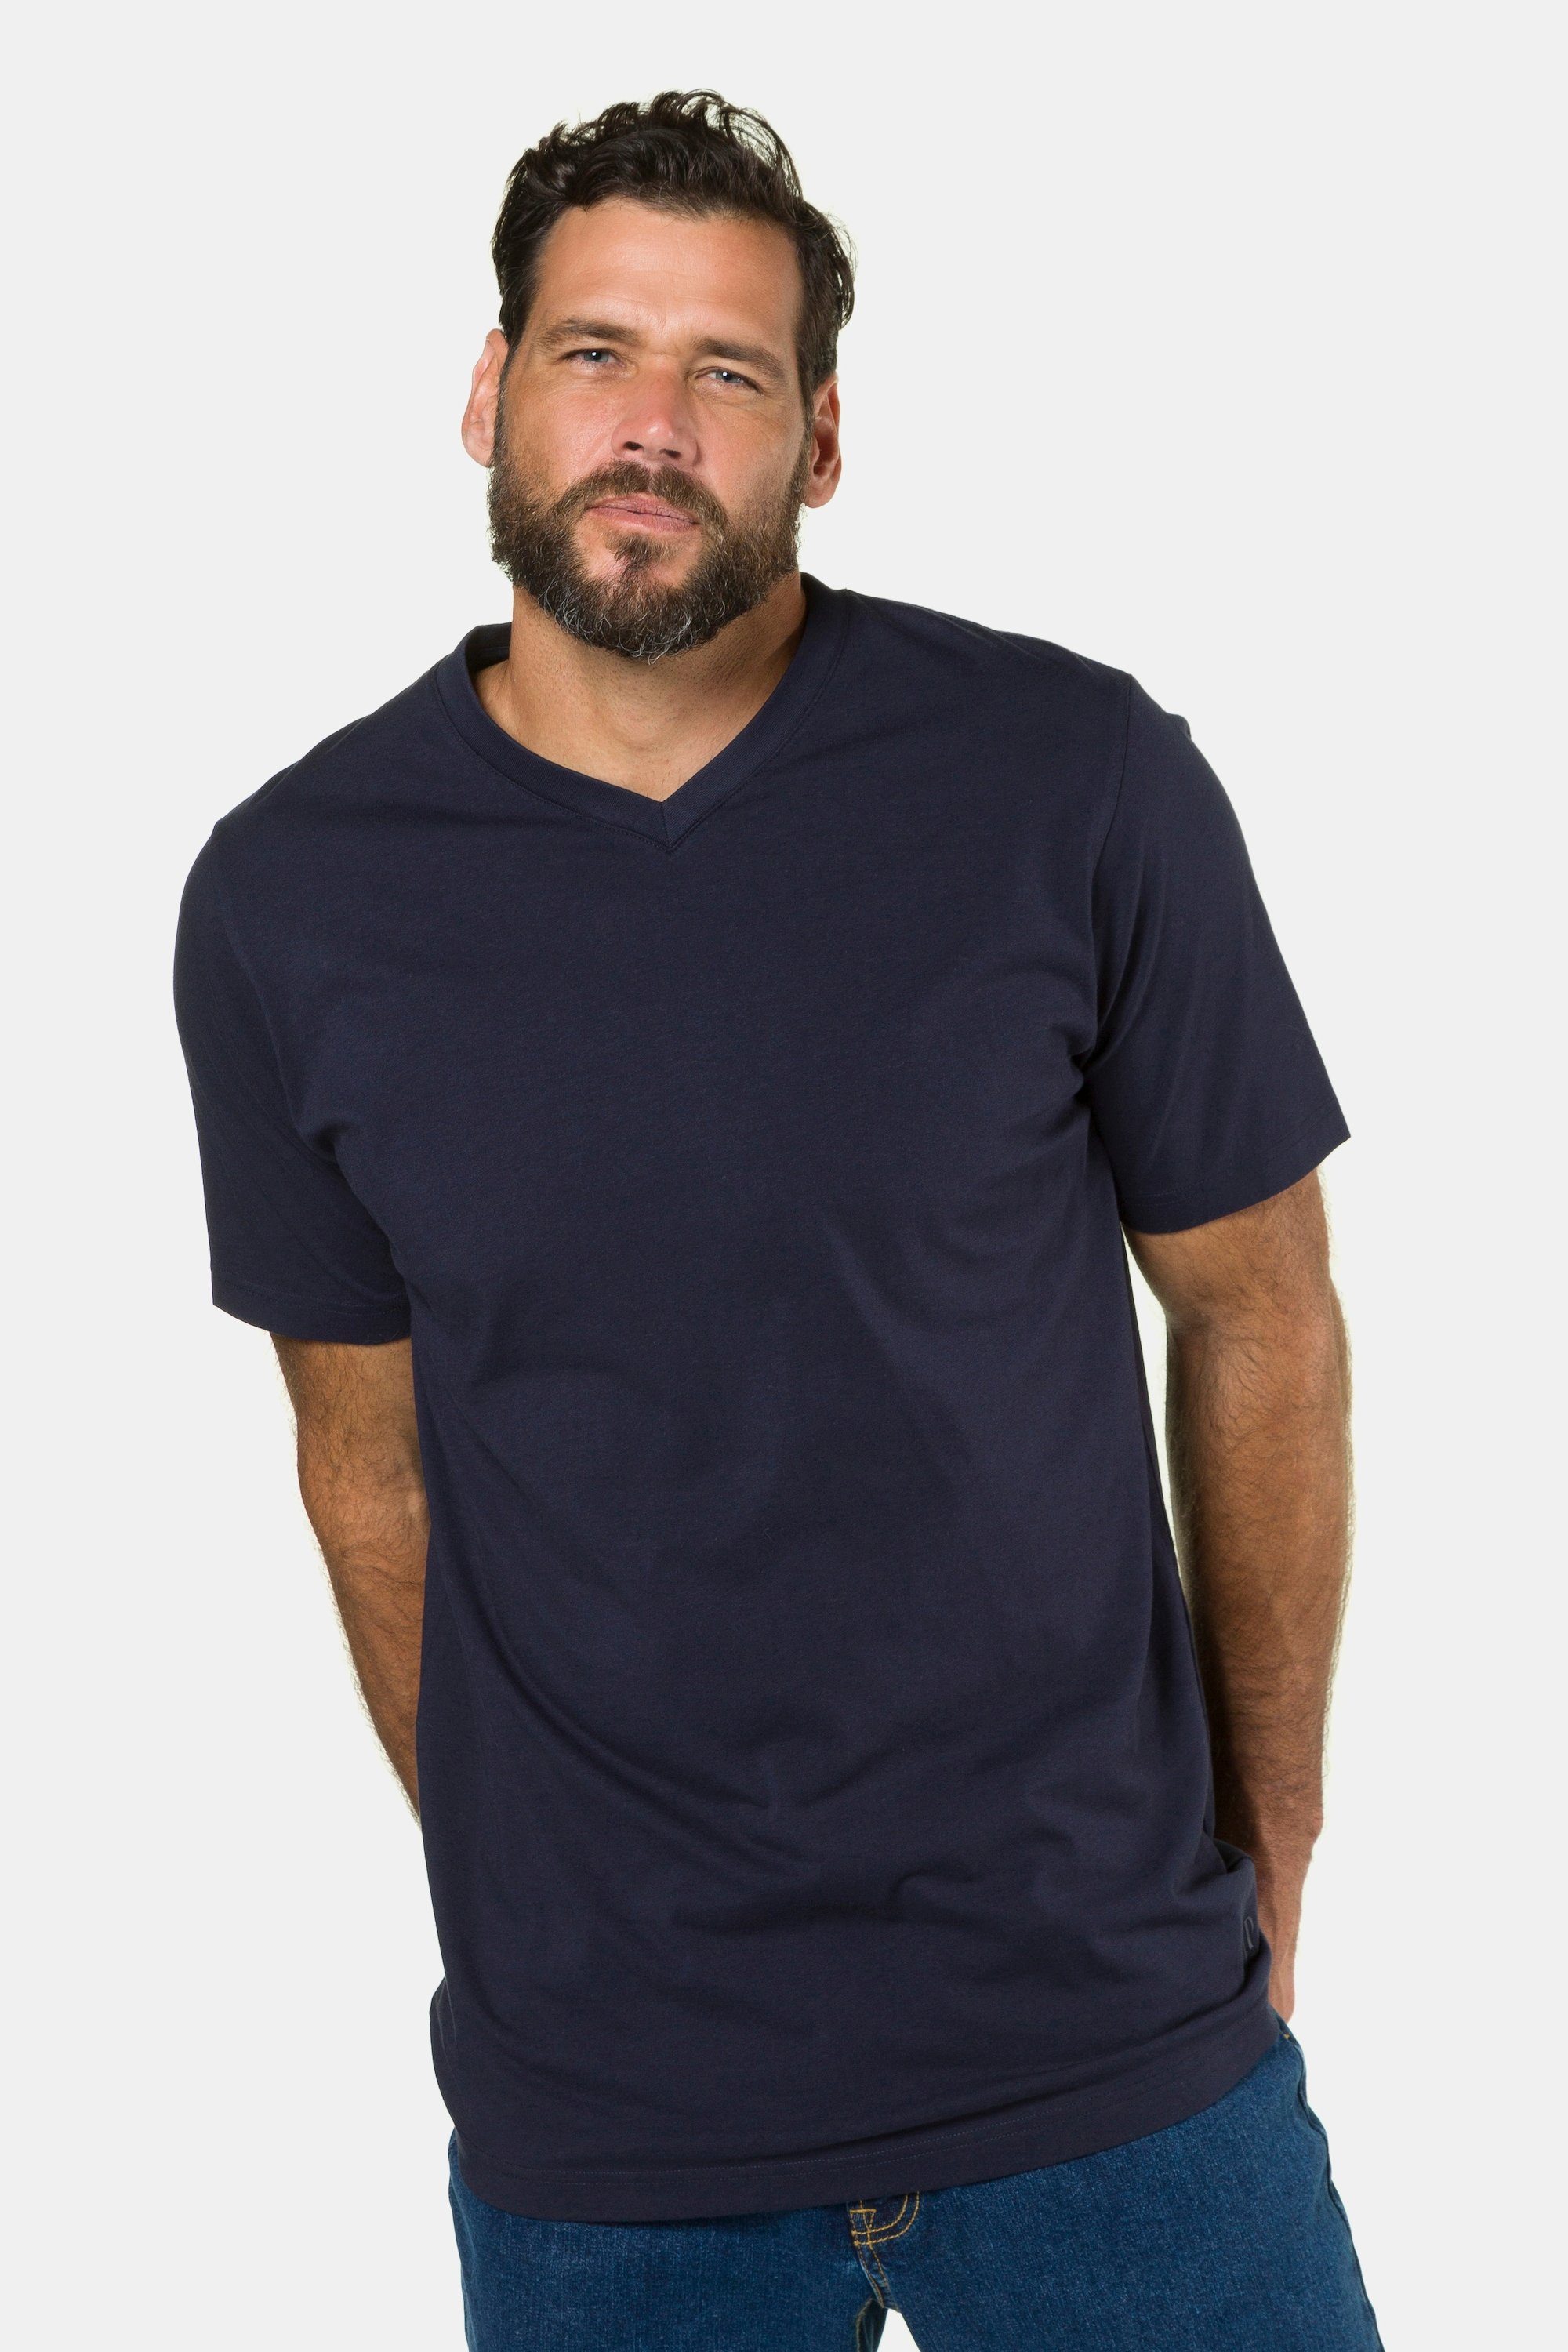 JP1880 Basic V-Ausschnitt dunkel T-Shirt 8XL marine T-Shirt bis